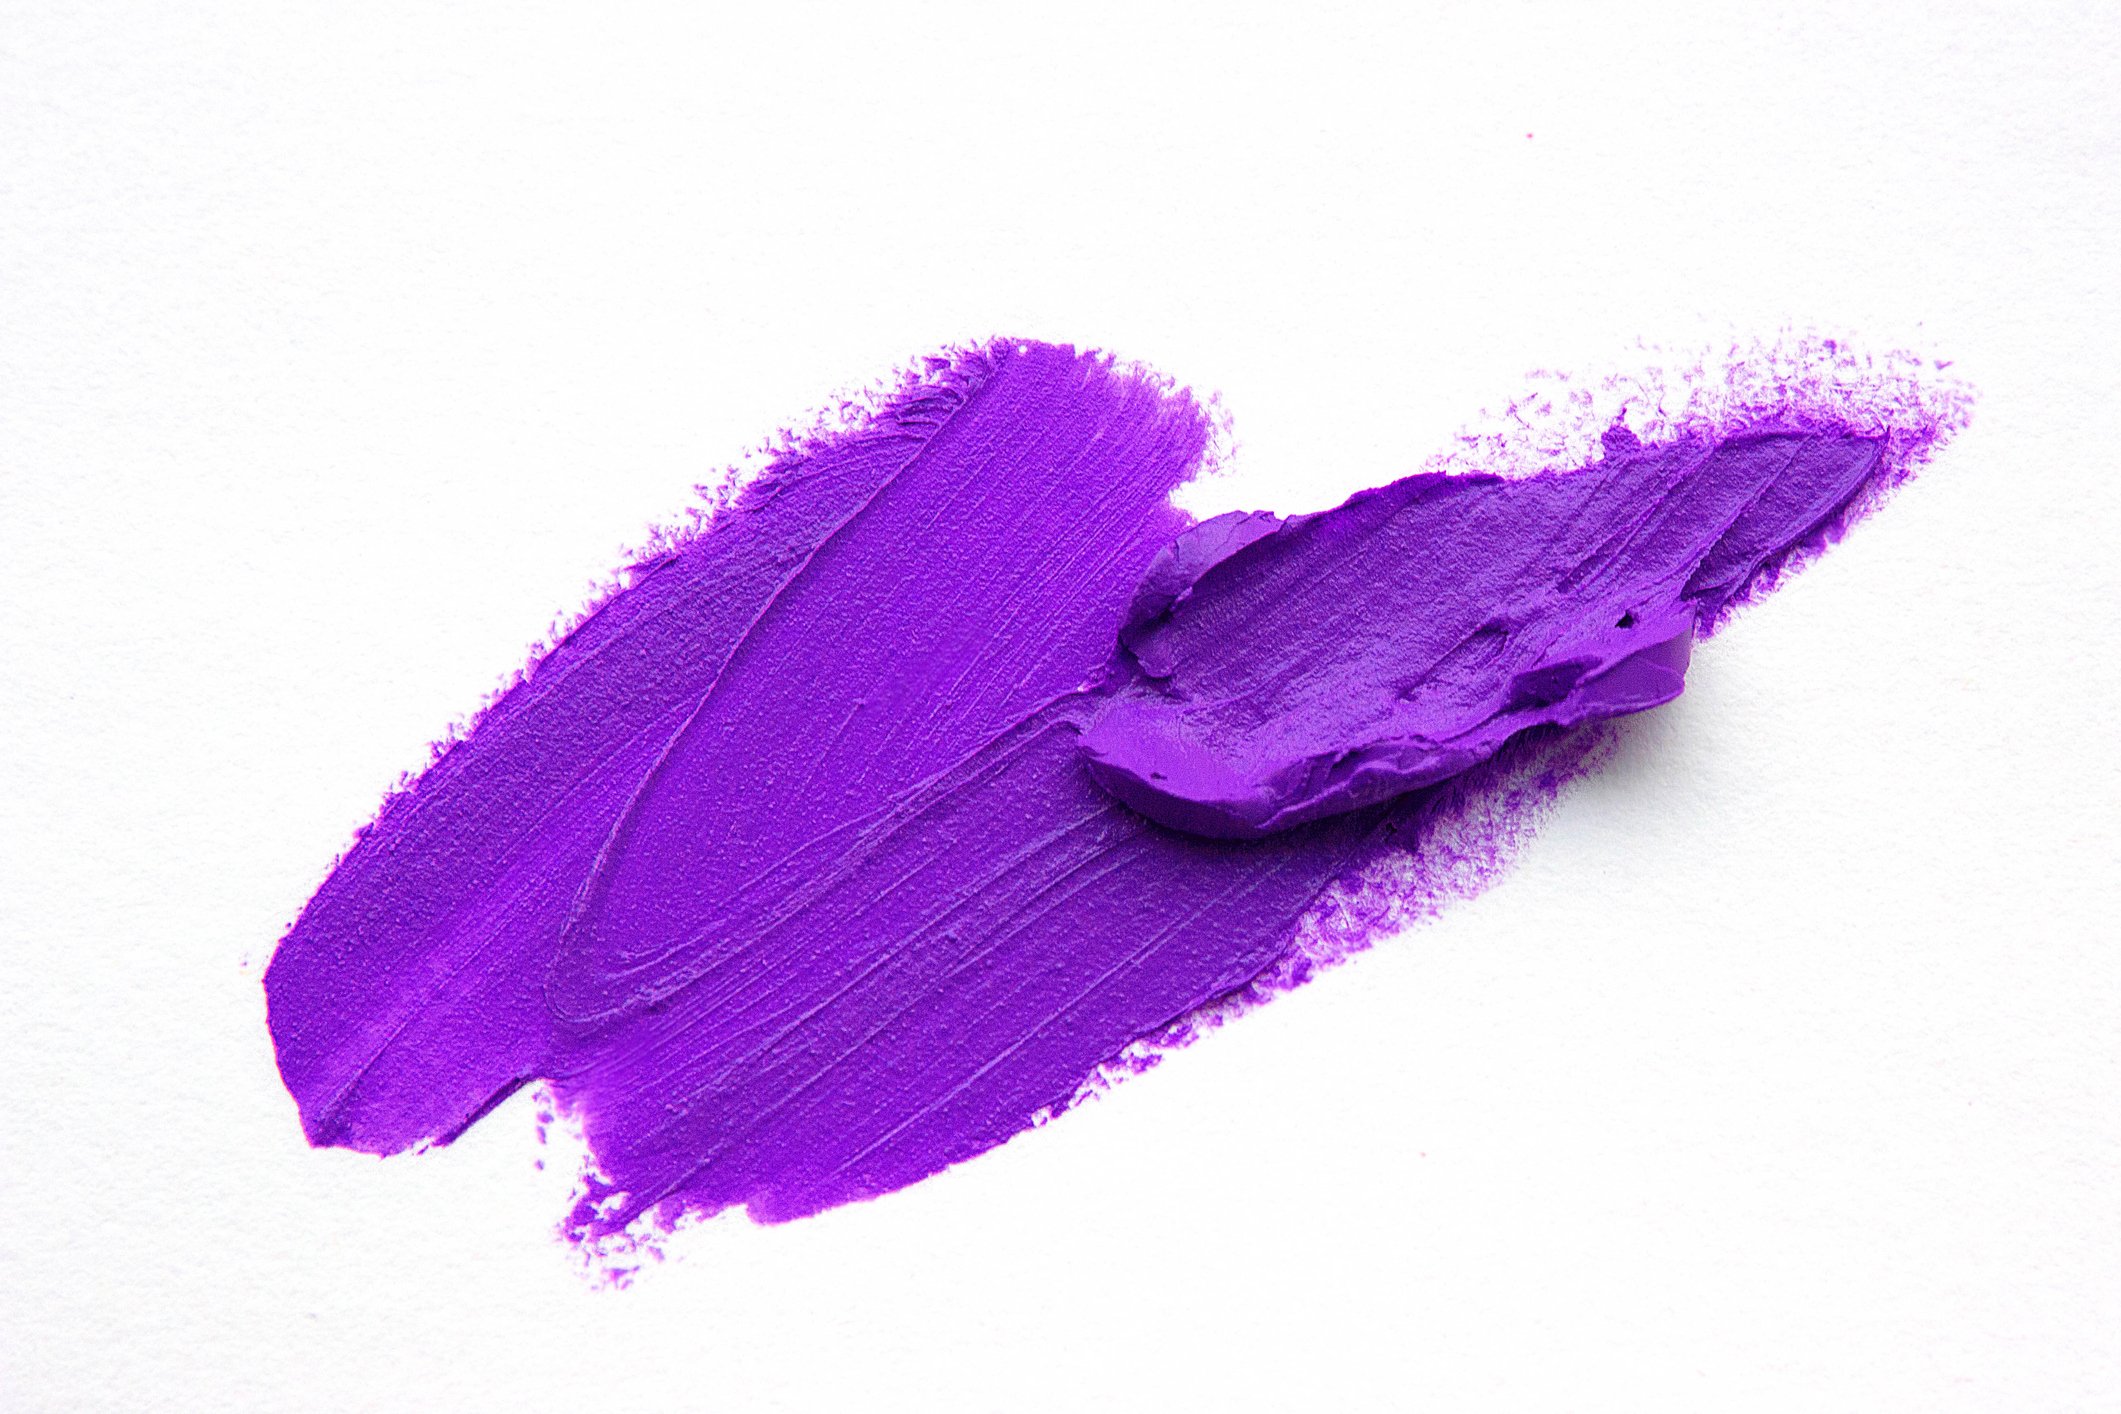 The color purple